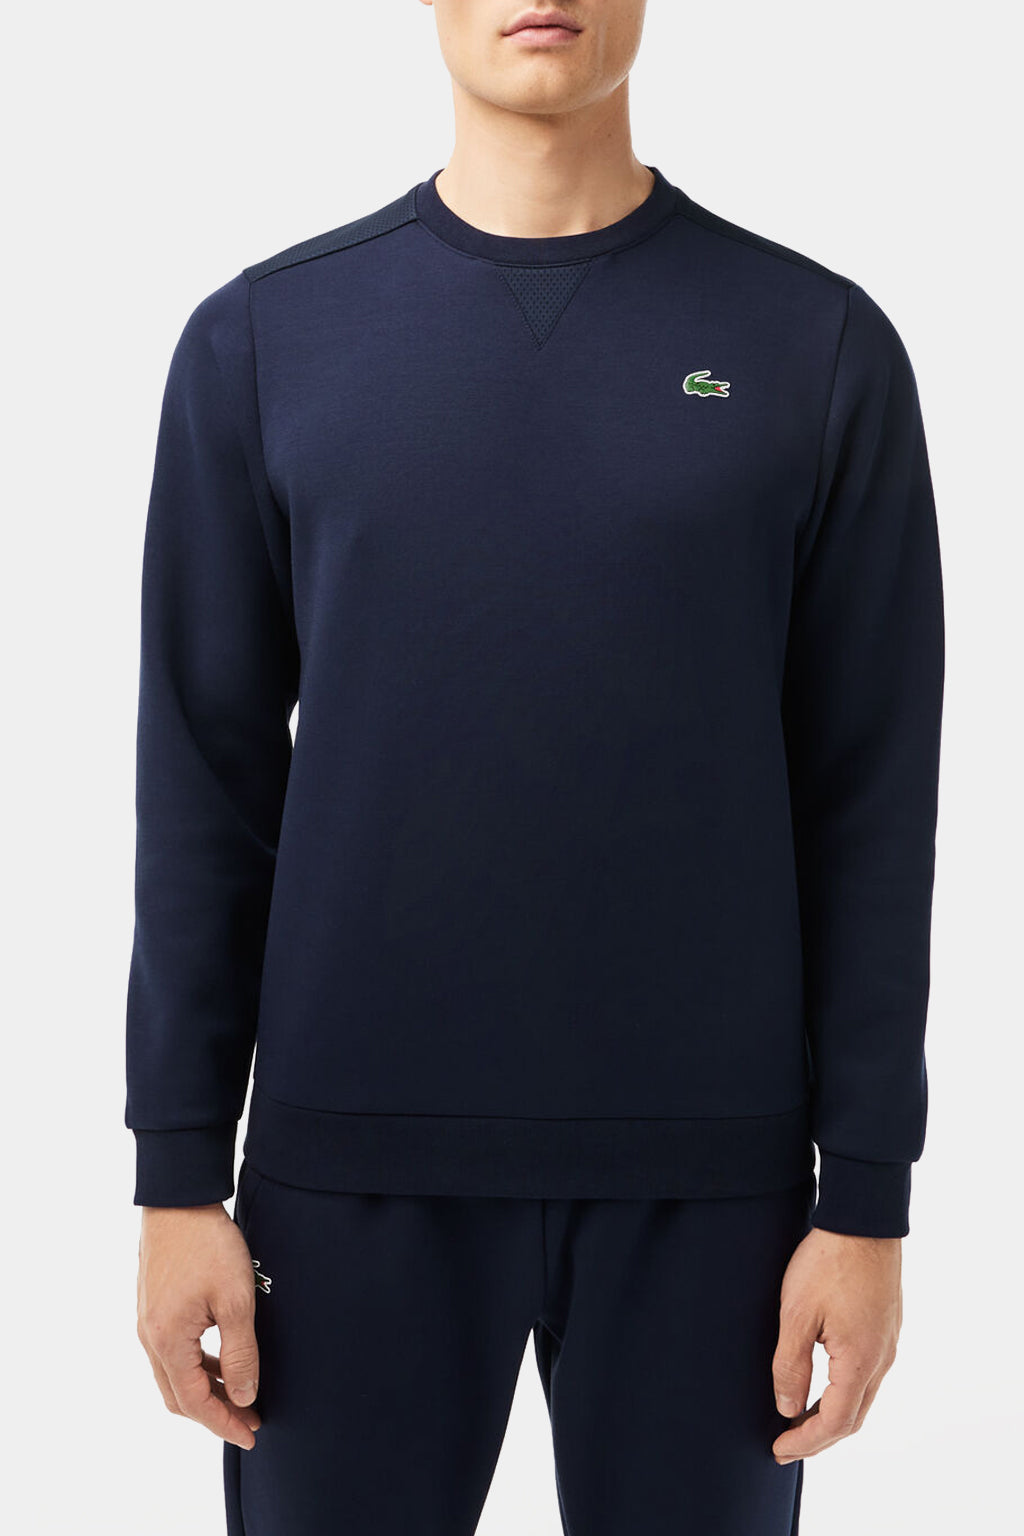 Lacoste - Men's Sport Mesh Panels Sweatshirt